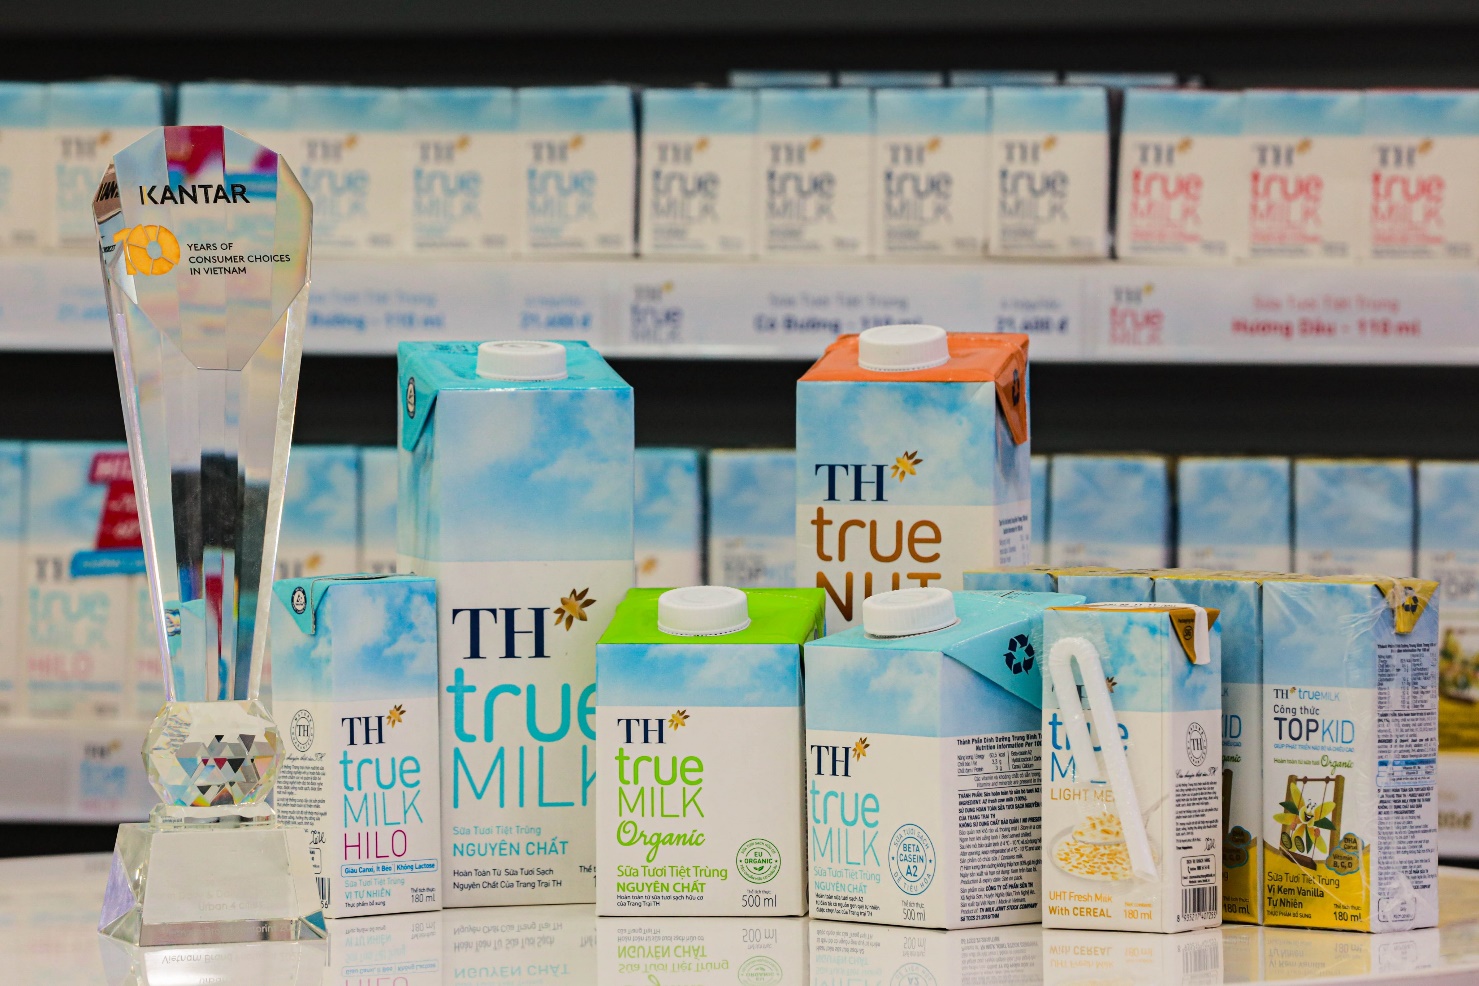 TH true MILK lọt Top 2 Thương hiệu sữa được người tiêu dùng lựa chọn nhiều nhất - Ảnh 2.